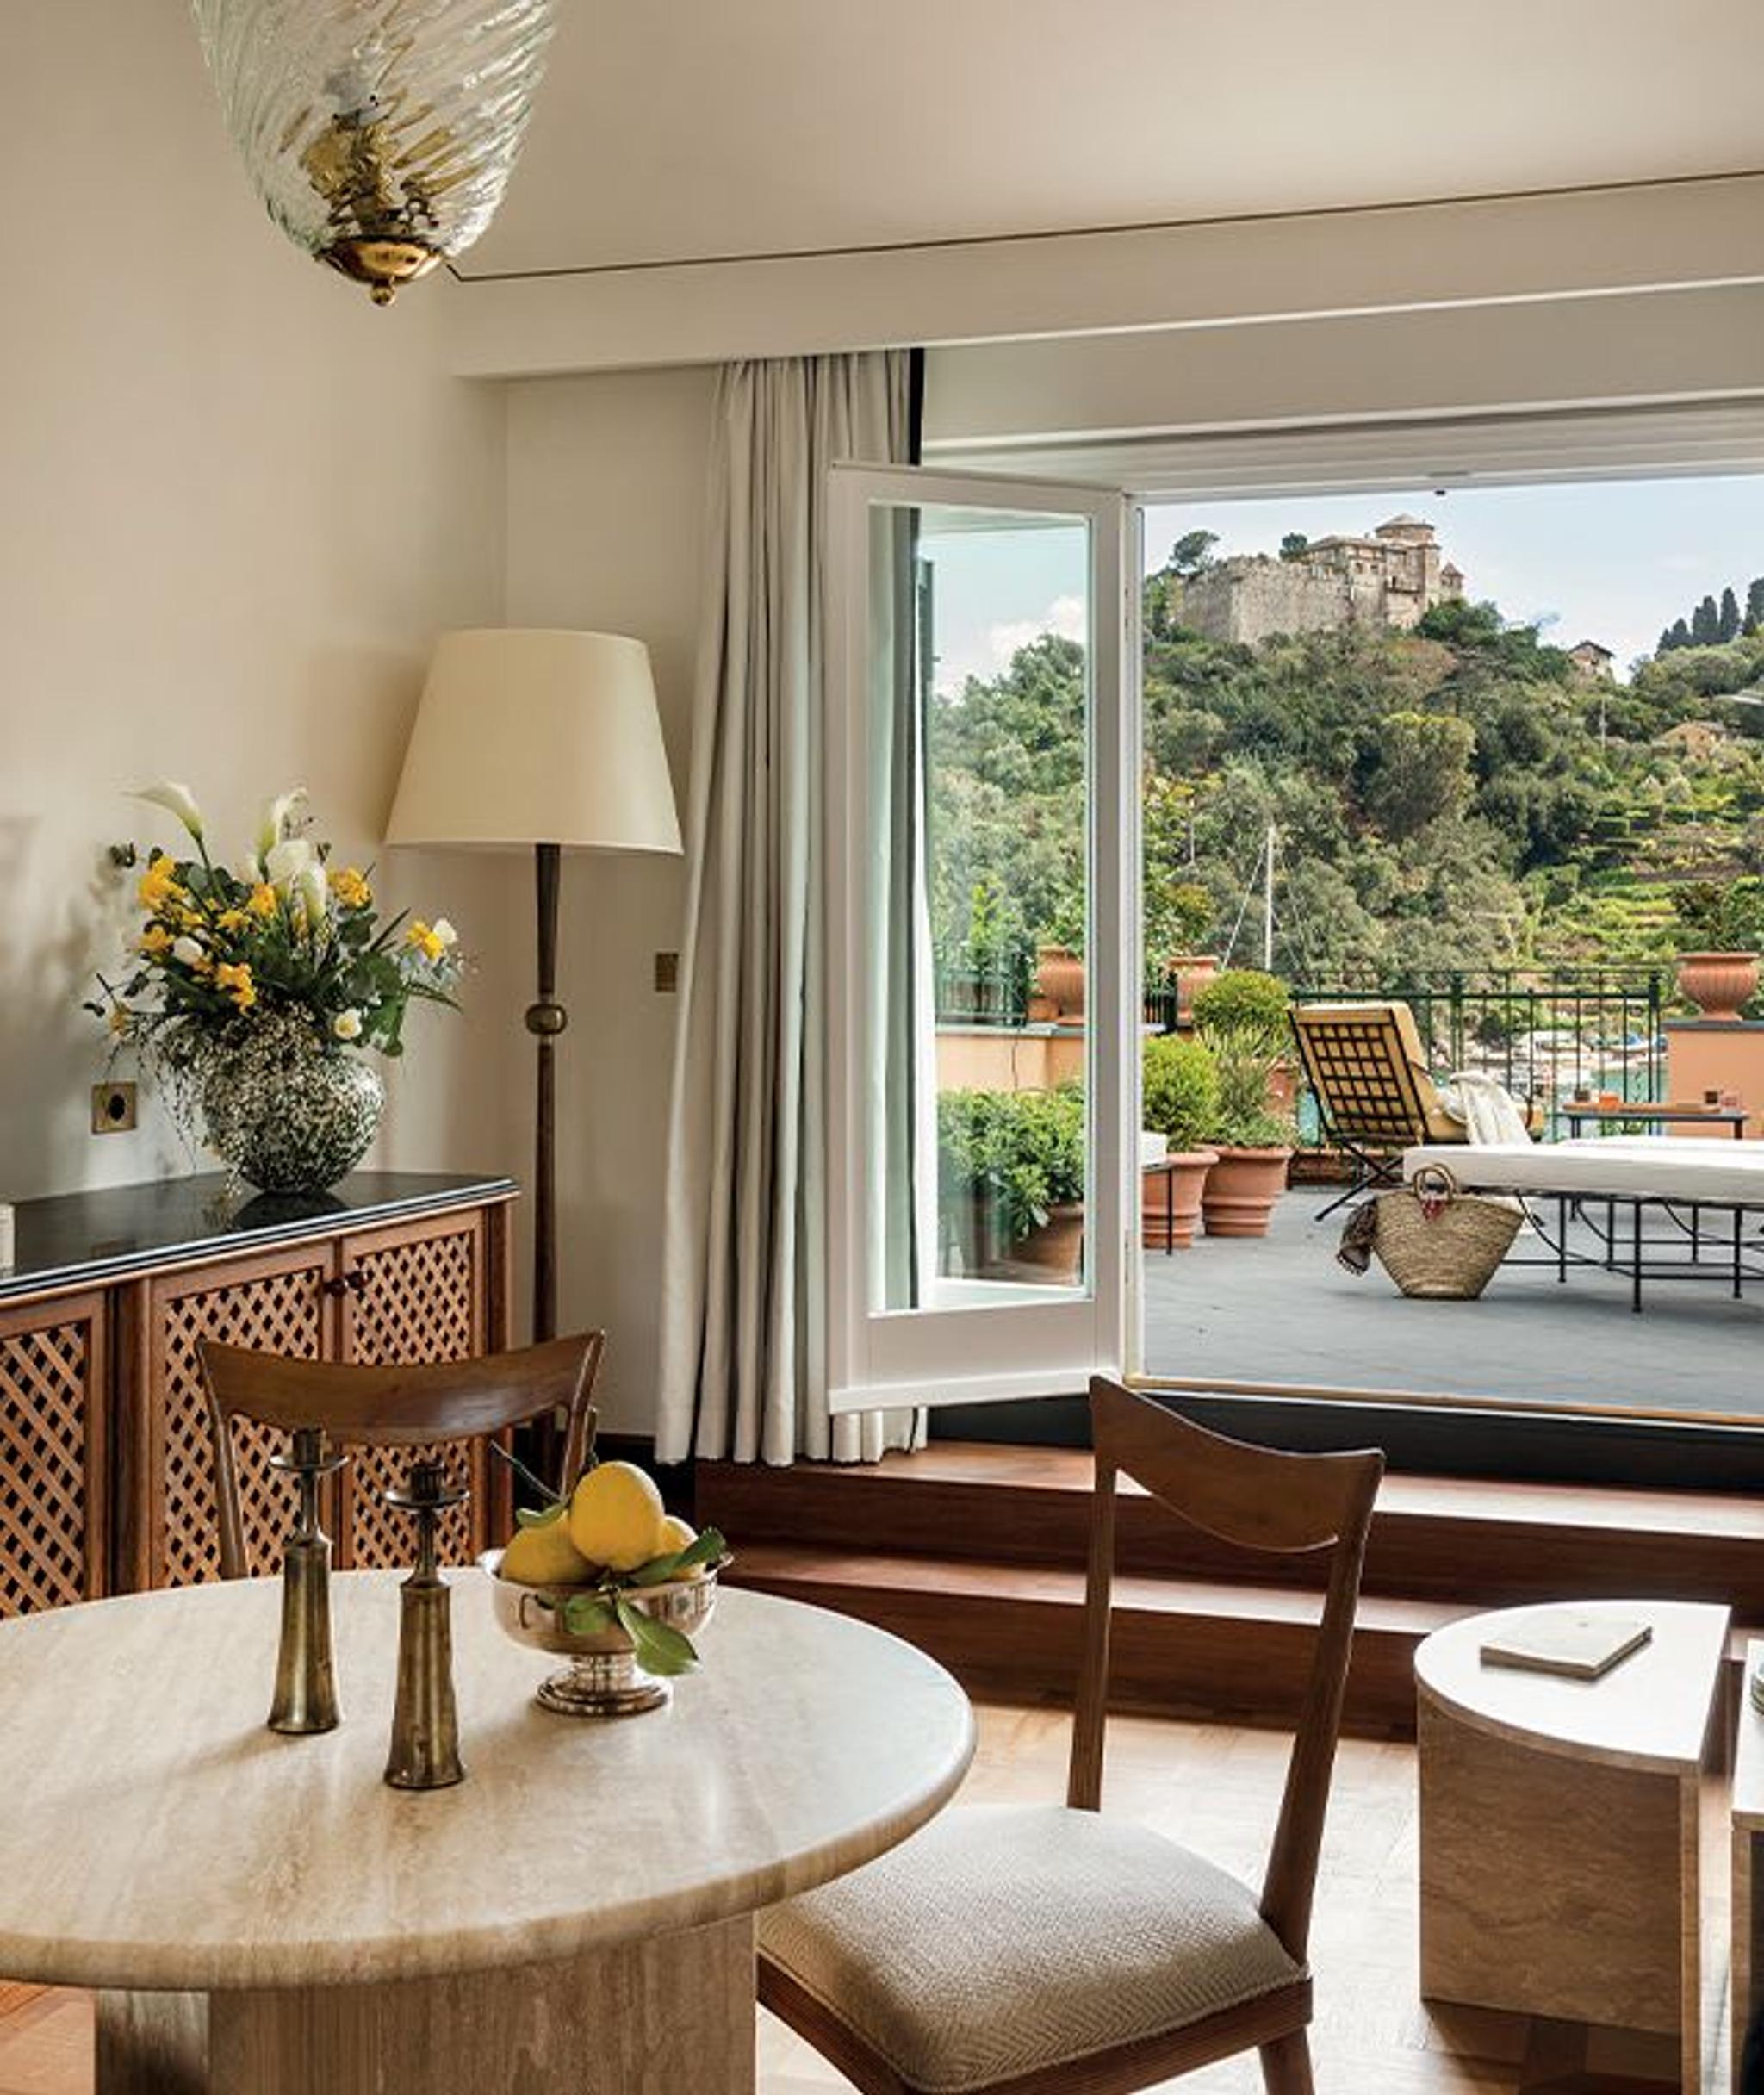 The Splendido Mare hotel in Portofino has been renovated by Festen